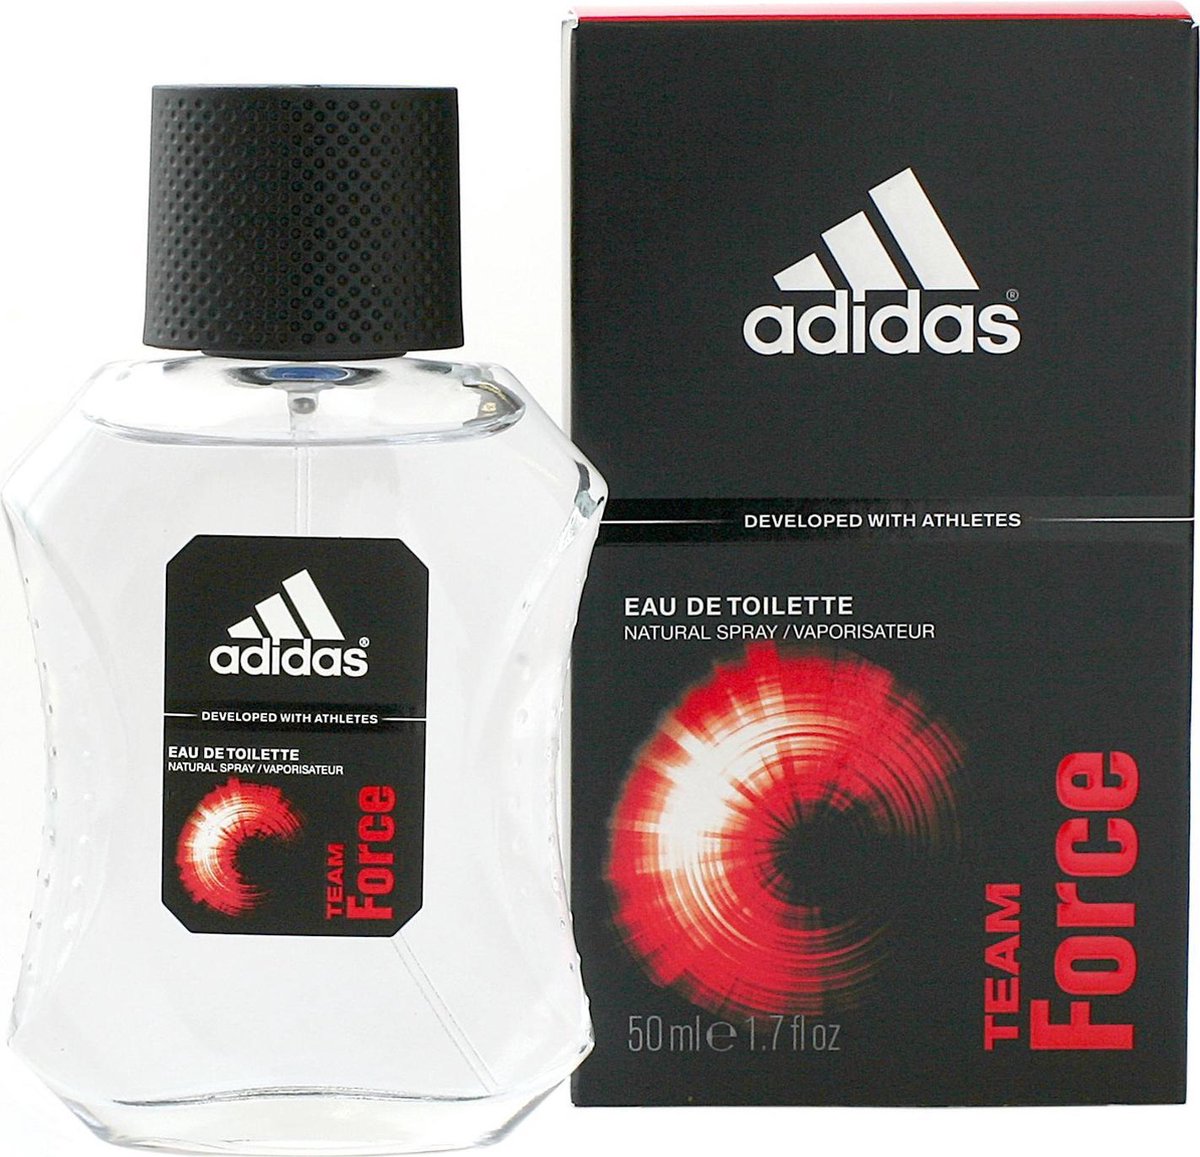 Adidas Team Force for Men - 50 ml - Eau de toilette